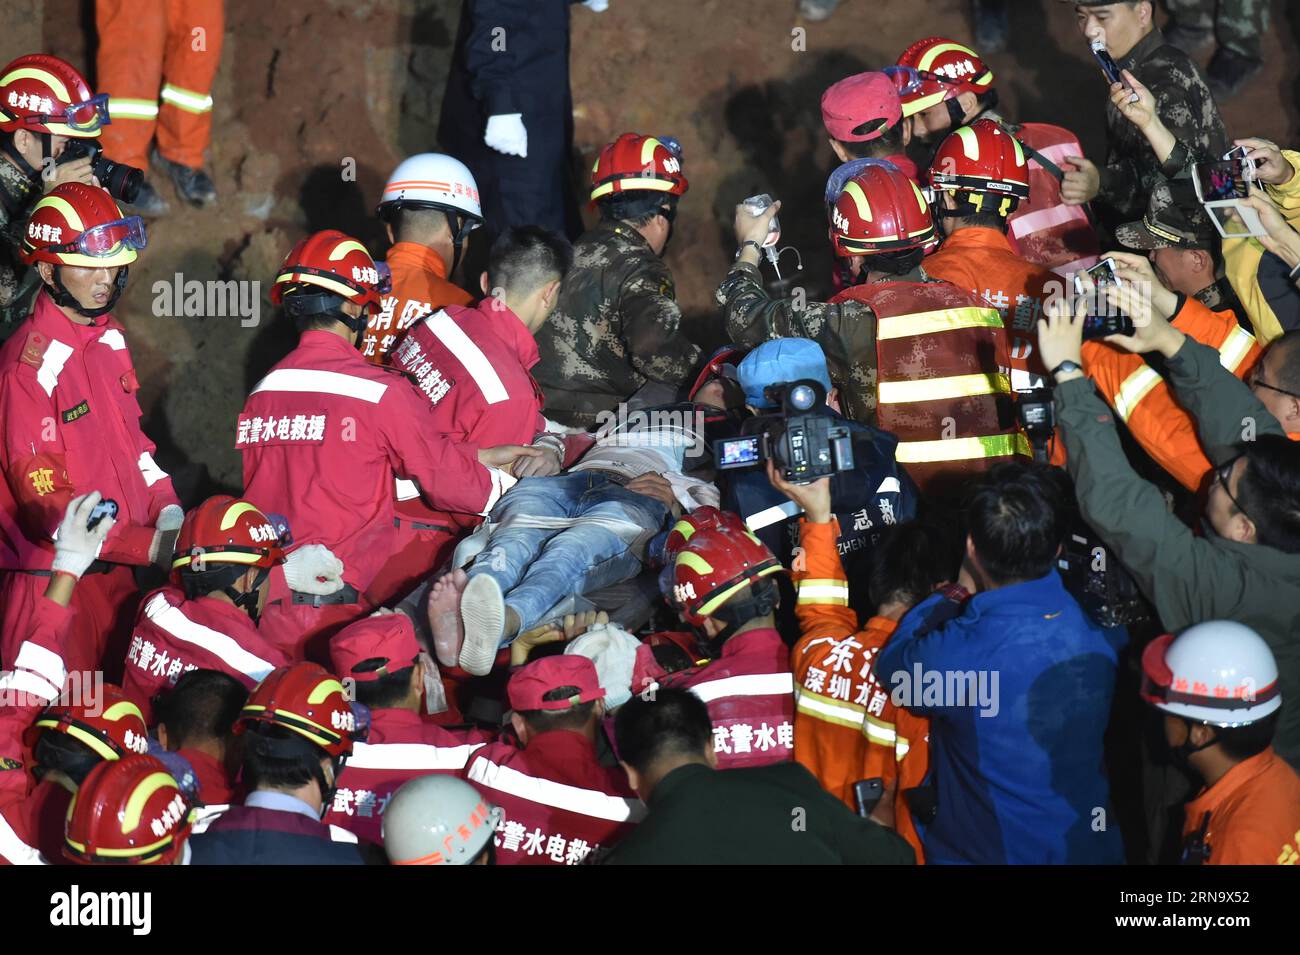 (151223) -- SHENZHEN, 23 décembre 2015 -- Un survivant a été trouvé sur le site d'un glissement de terrain dans un parc industriel de Shenzhen, dans la province du Guangdong du sud de la Chine, le 23 décembre 2015. Un homme a été sorti vivant tôt mercredi matin plus de 60 heures après un glissement de terrain à Shenzhen. ) (lfj) CHINA-SHENZHEN-LANDSLIDE-SURVIVOR (CN) LiangxXu PUBLICATIONxNOTxINxCHN Shenzhen DEC 23 2015 un survivant EST trouvé SUR le site de glissement de terrain À au parc industriel de Shenzhen South China S Guangdong province DEC 23 2015 un homme qui a retiré Herrera tôt mercredi matin plus de 60 heures après un glissement de terrain à Shenzhe Banque D'Images